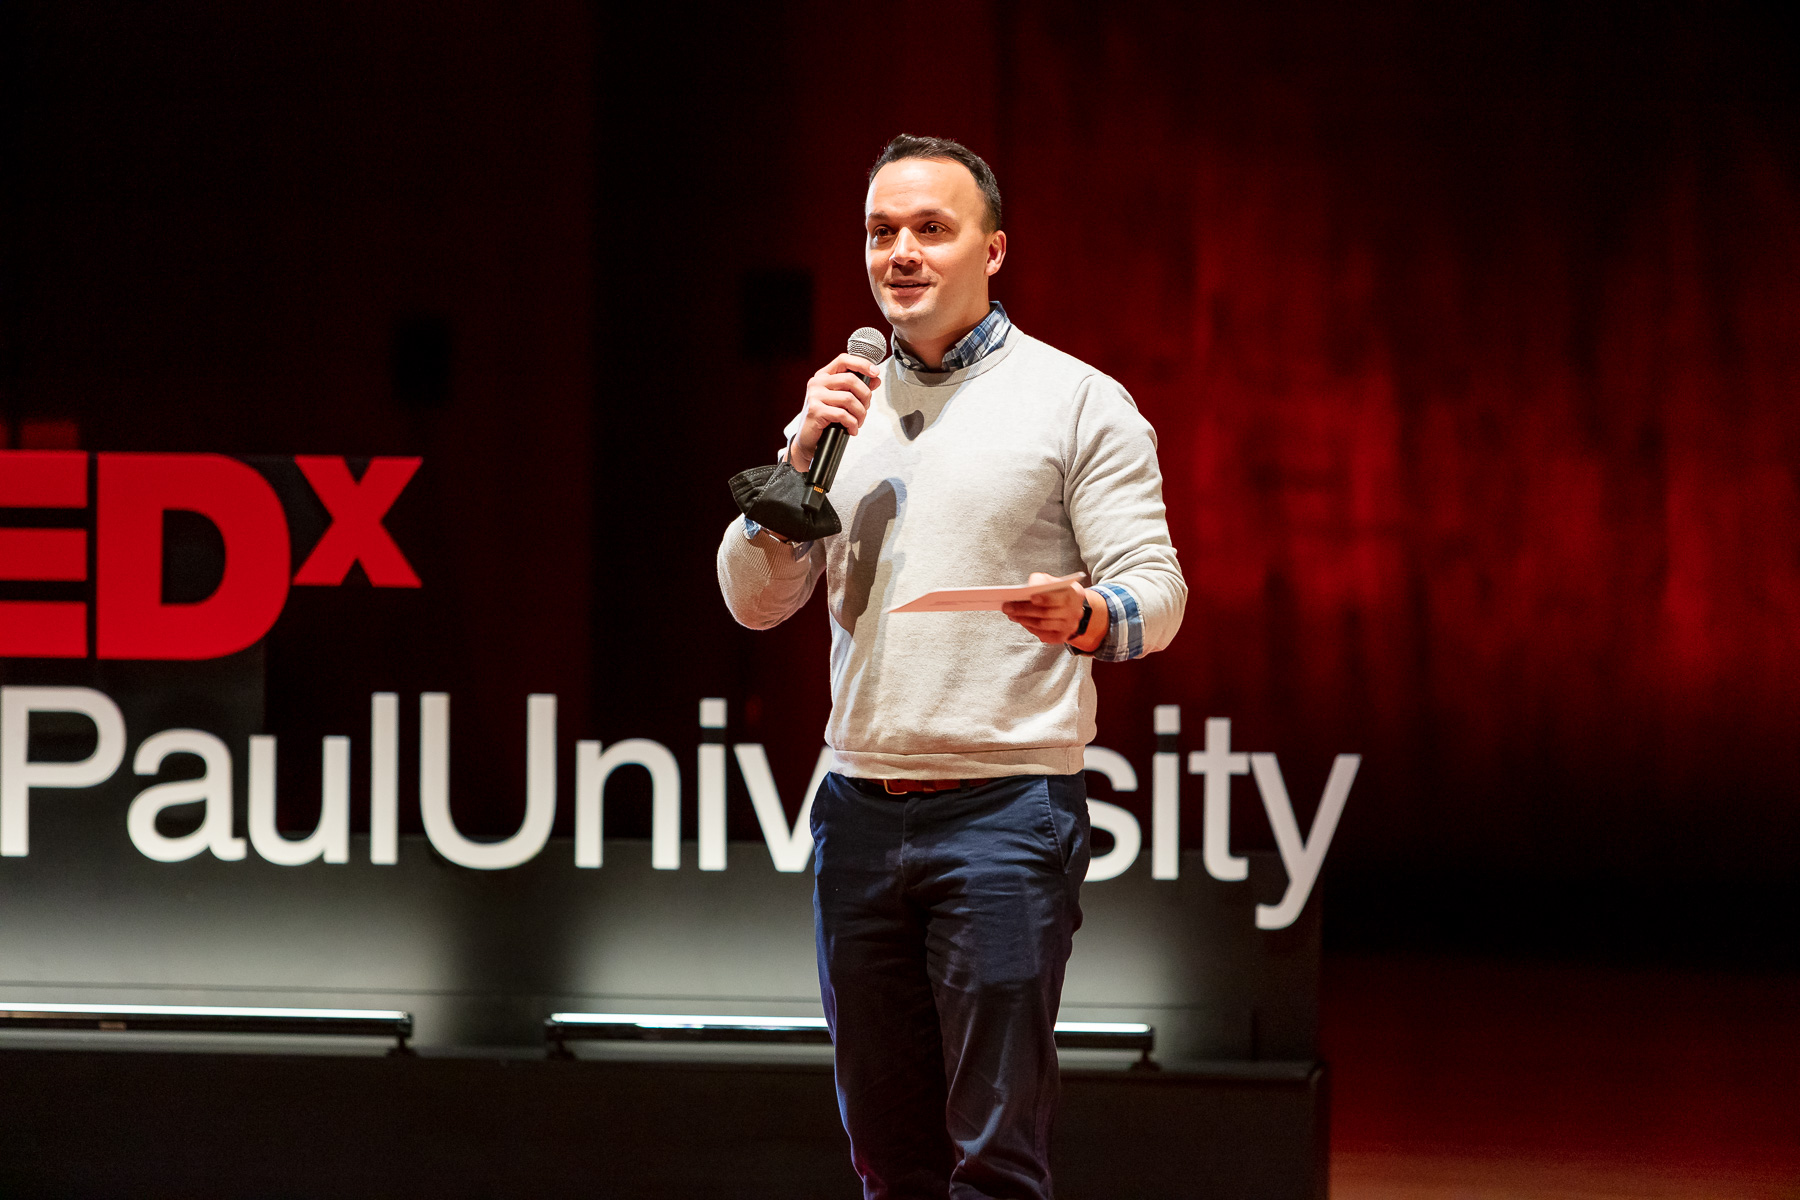 TEDxDePaulUniversity 2022